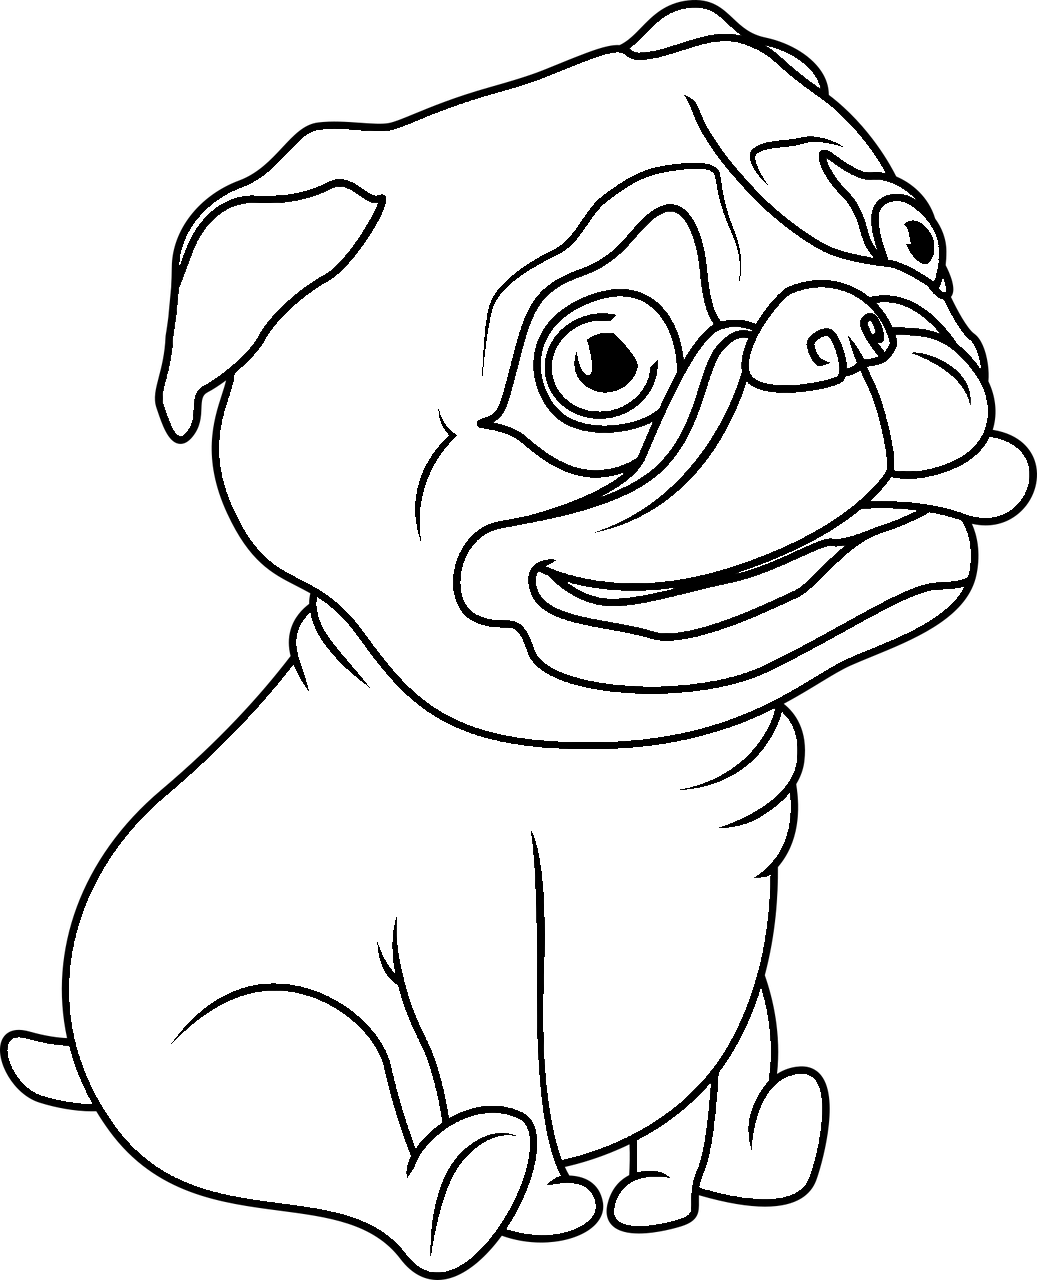 Disegno da colorare di cane Carlino seduto stile cartone animato